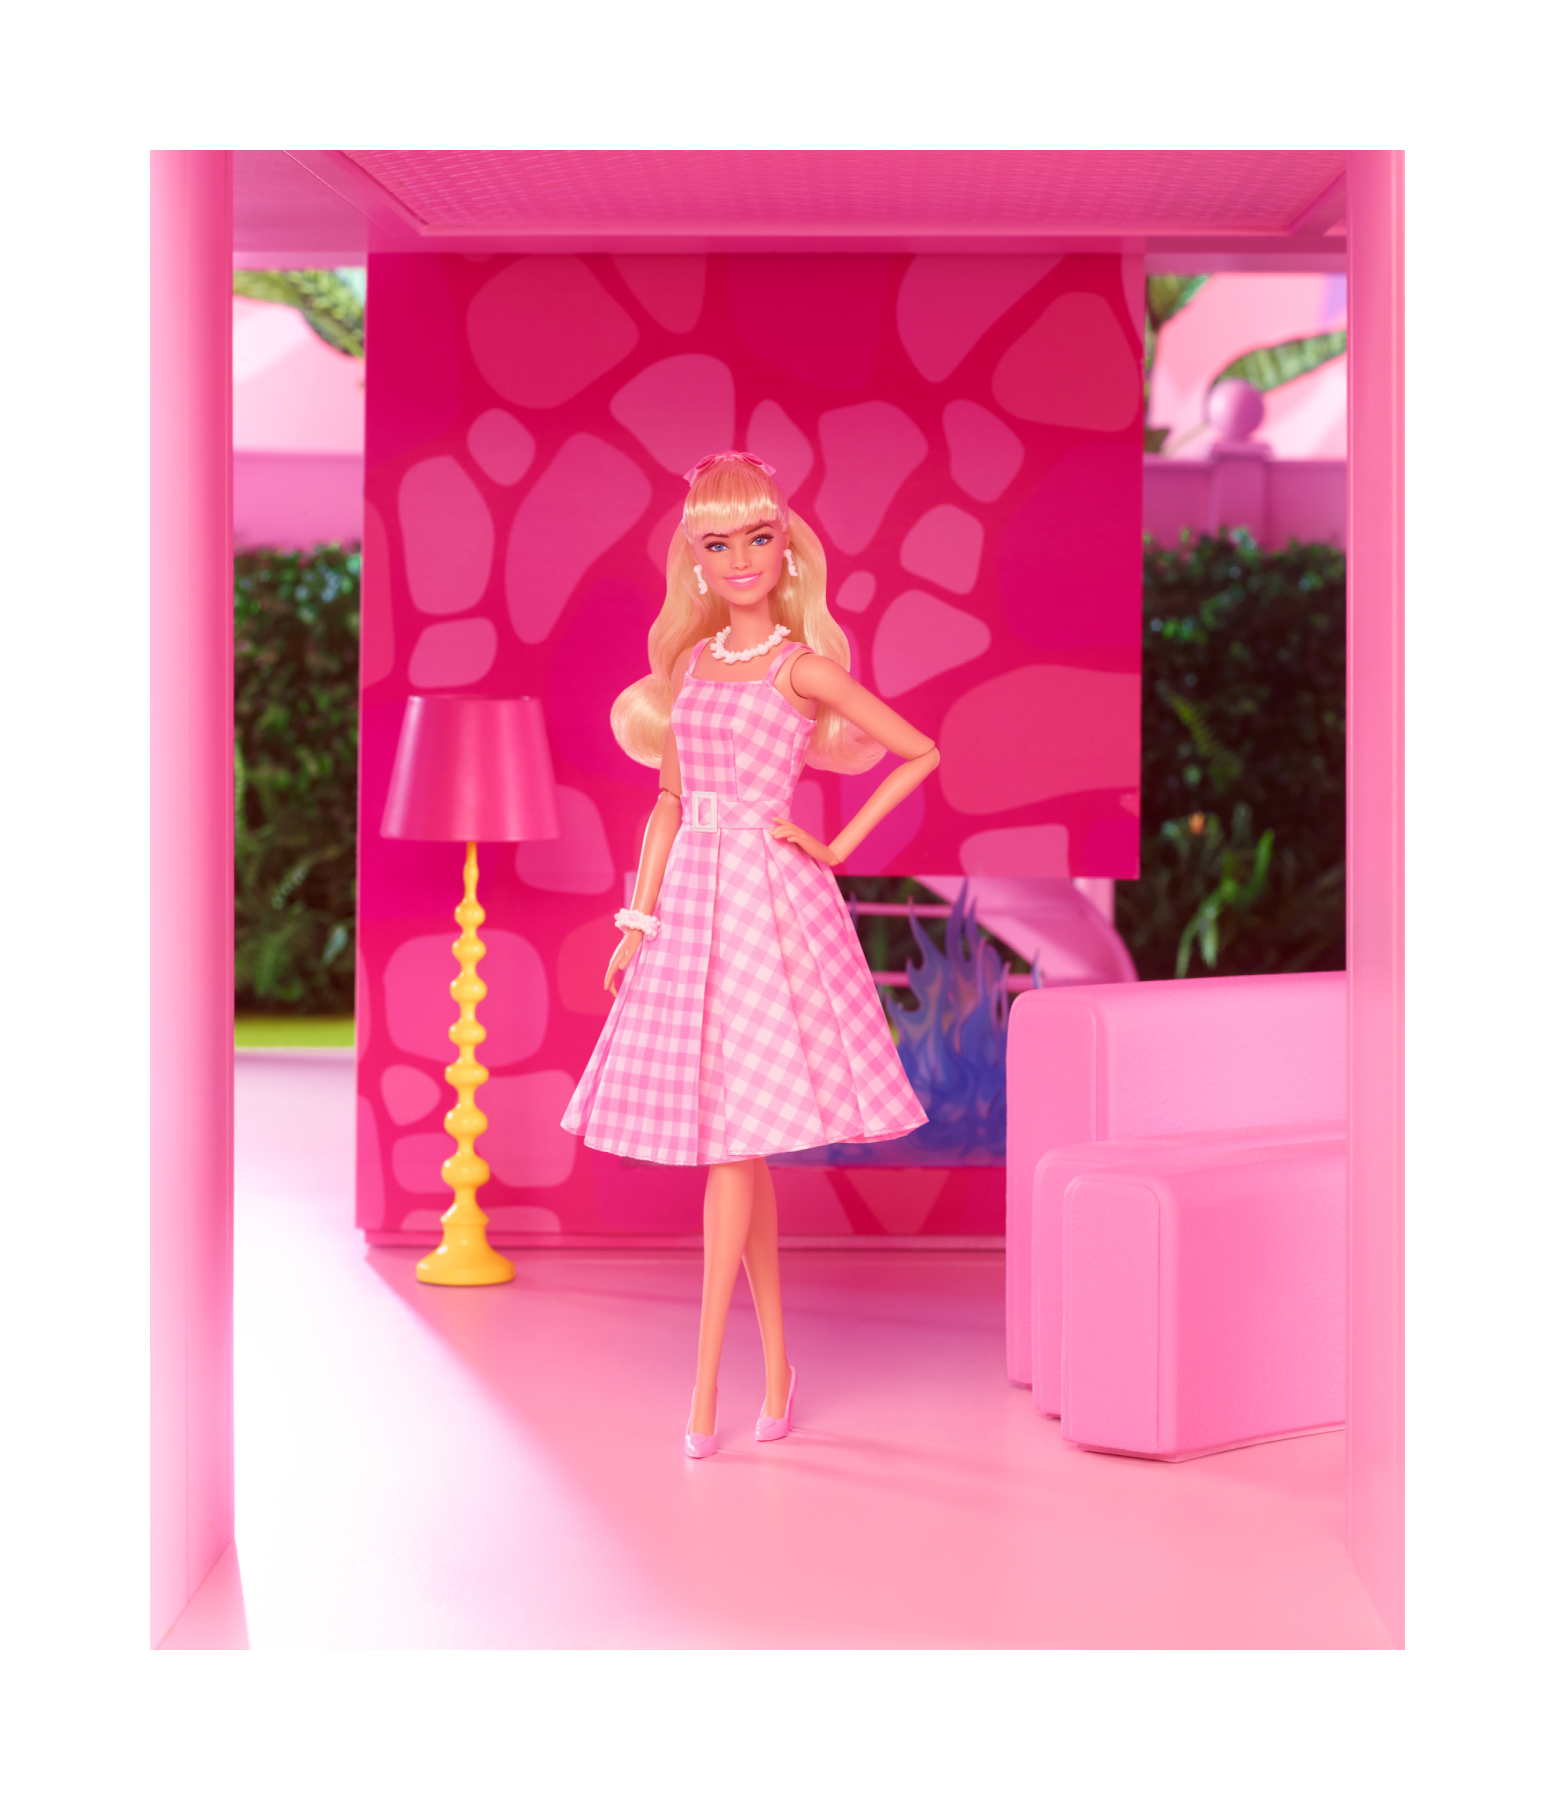 Roupas rosas, bonecas e até milk-shake: filme da Barbie movimenta